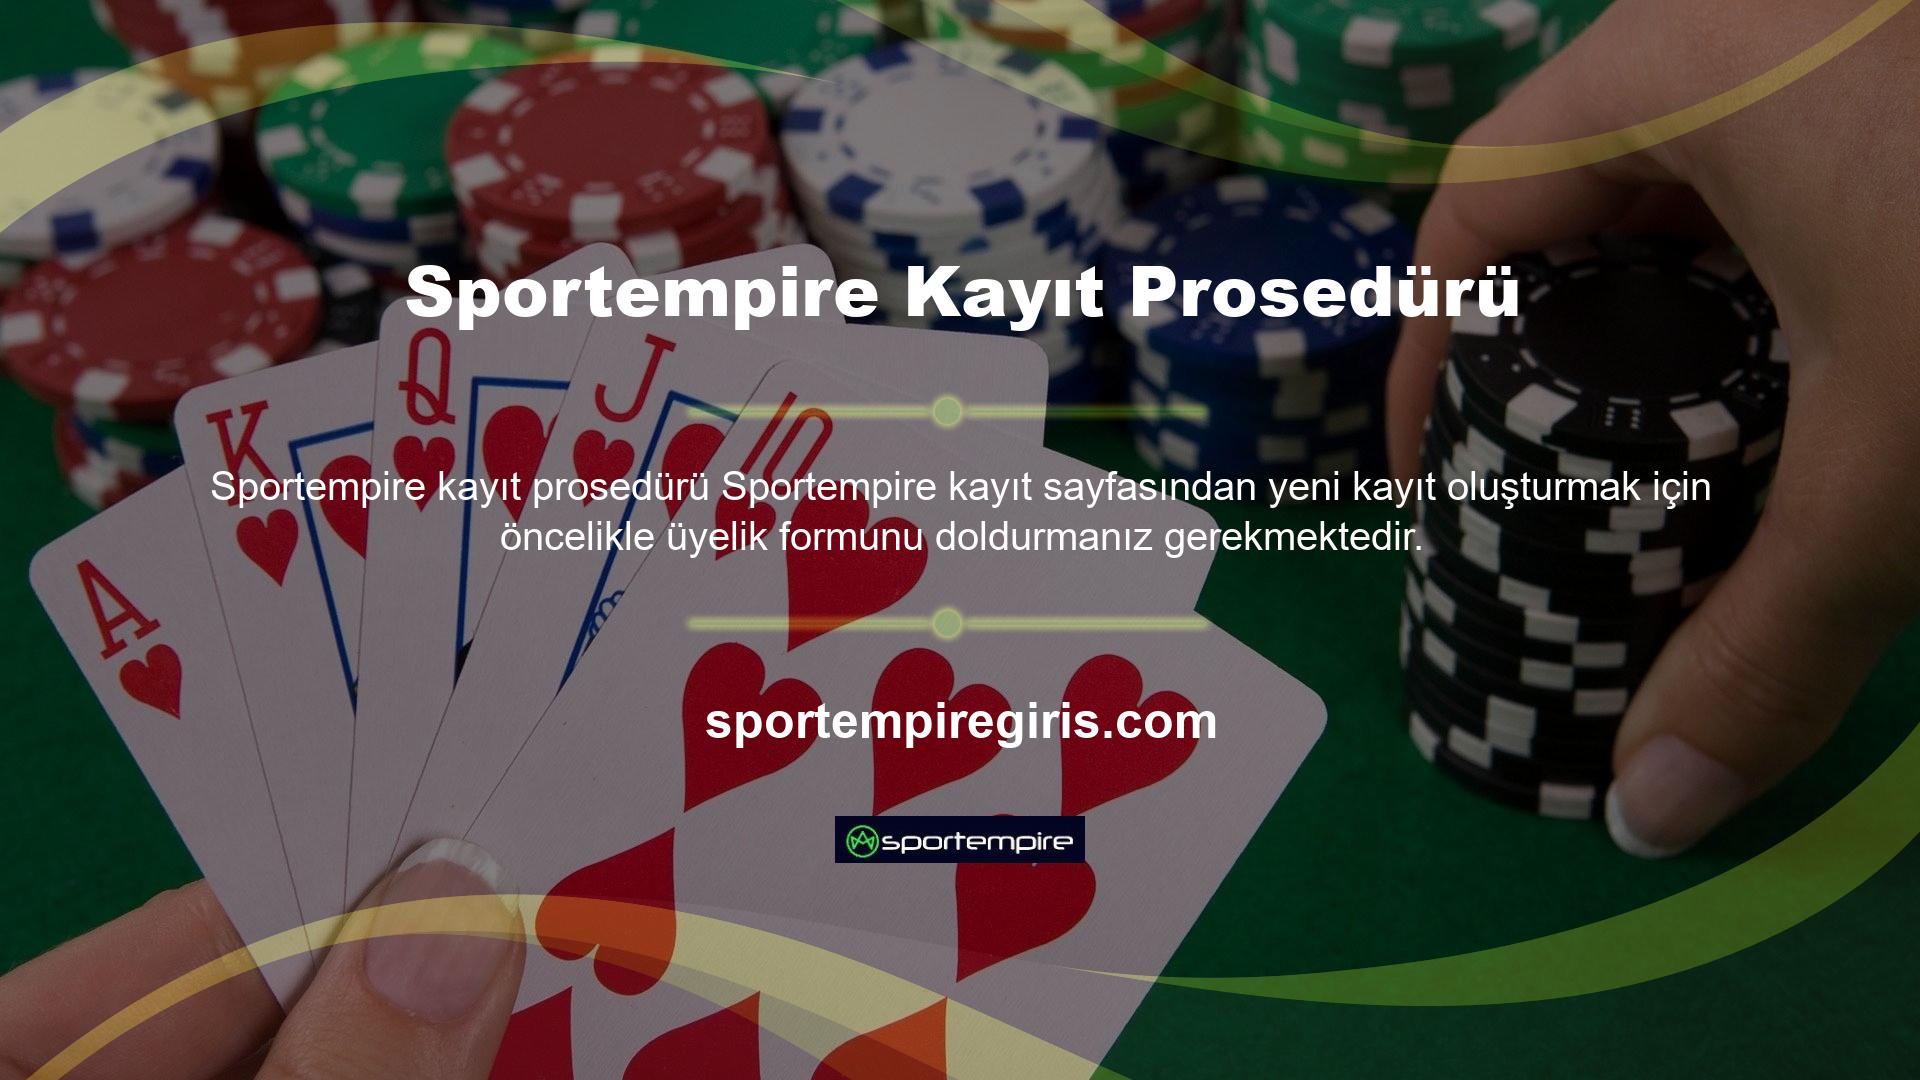 Sportempire web sitesi, her üyeye gönülden davranmamızı sağlayan güvenilir ve kaliteli bir hizmet anlayışına sahiptir